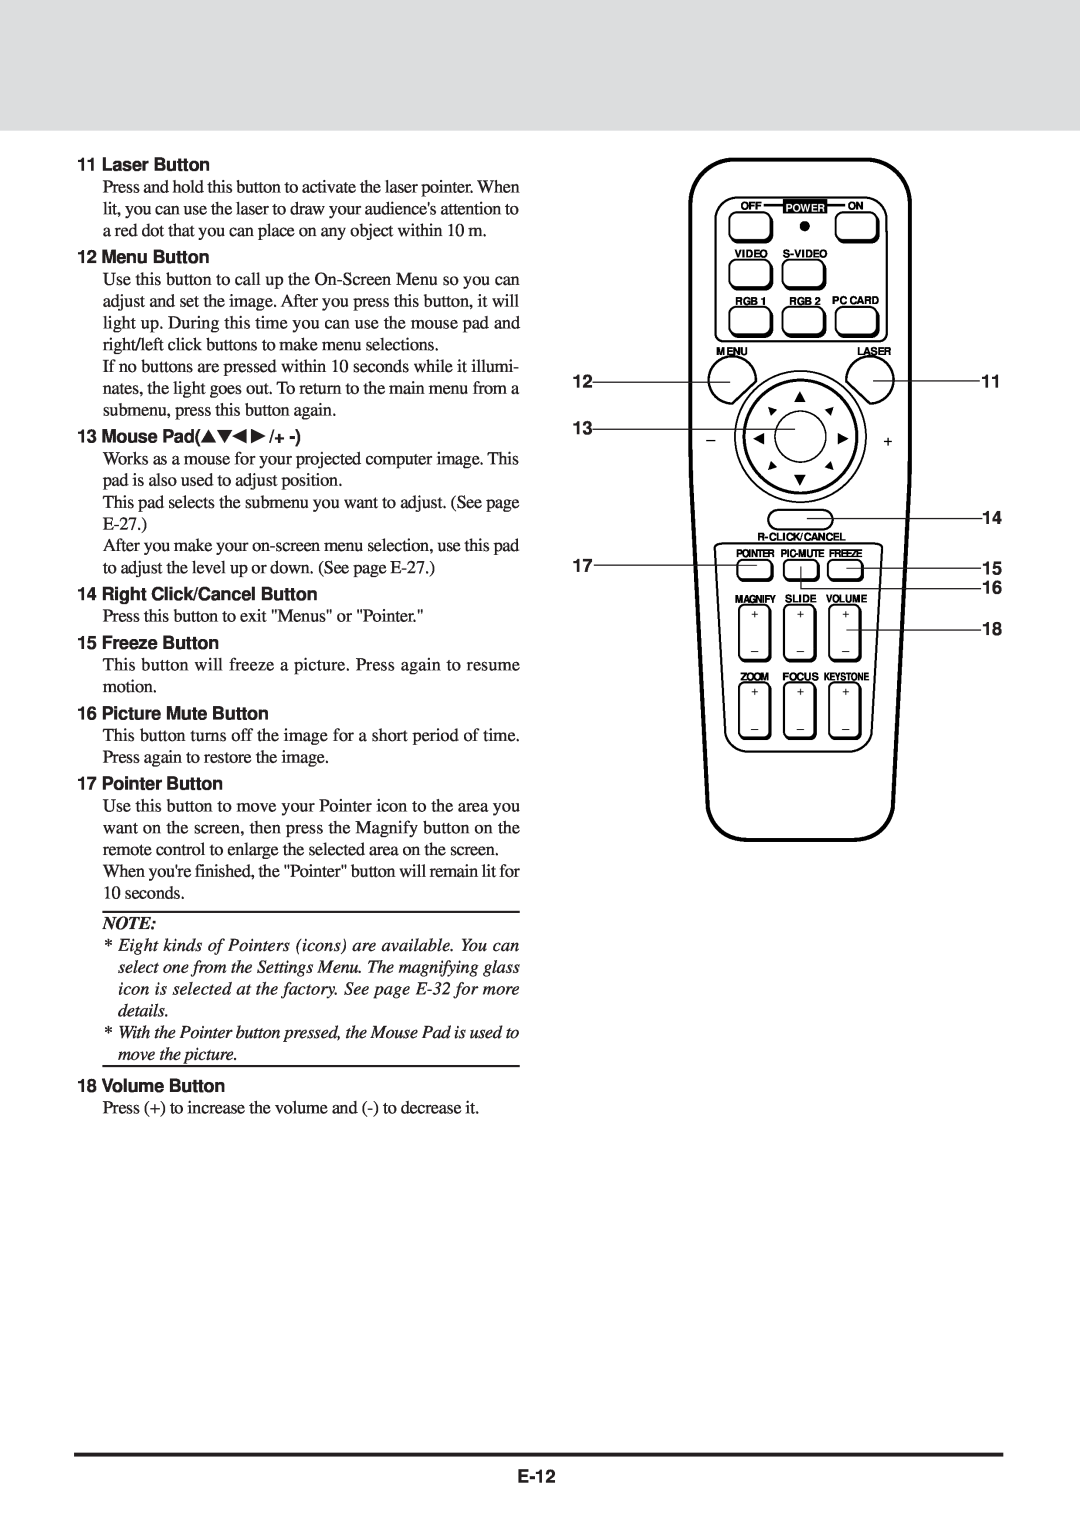 NEC MT830 Laser Button, Menu Button, Mouse Pad /+, Right Click/Cancel Button, Freeze Button, Picture Mute Button, E-12 